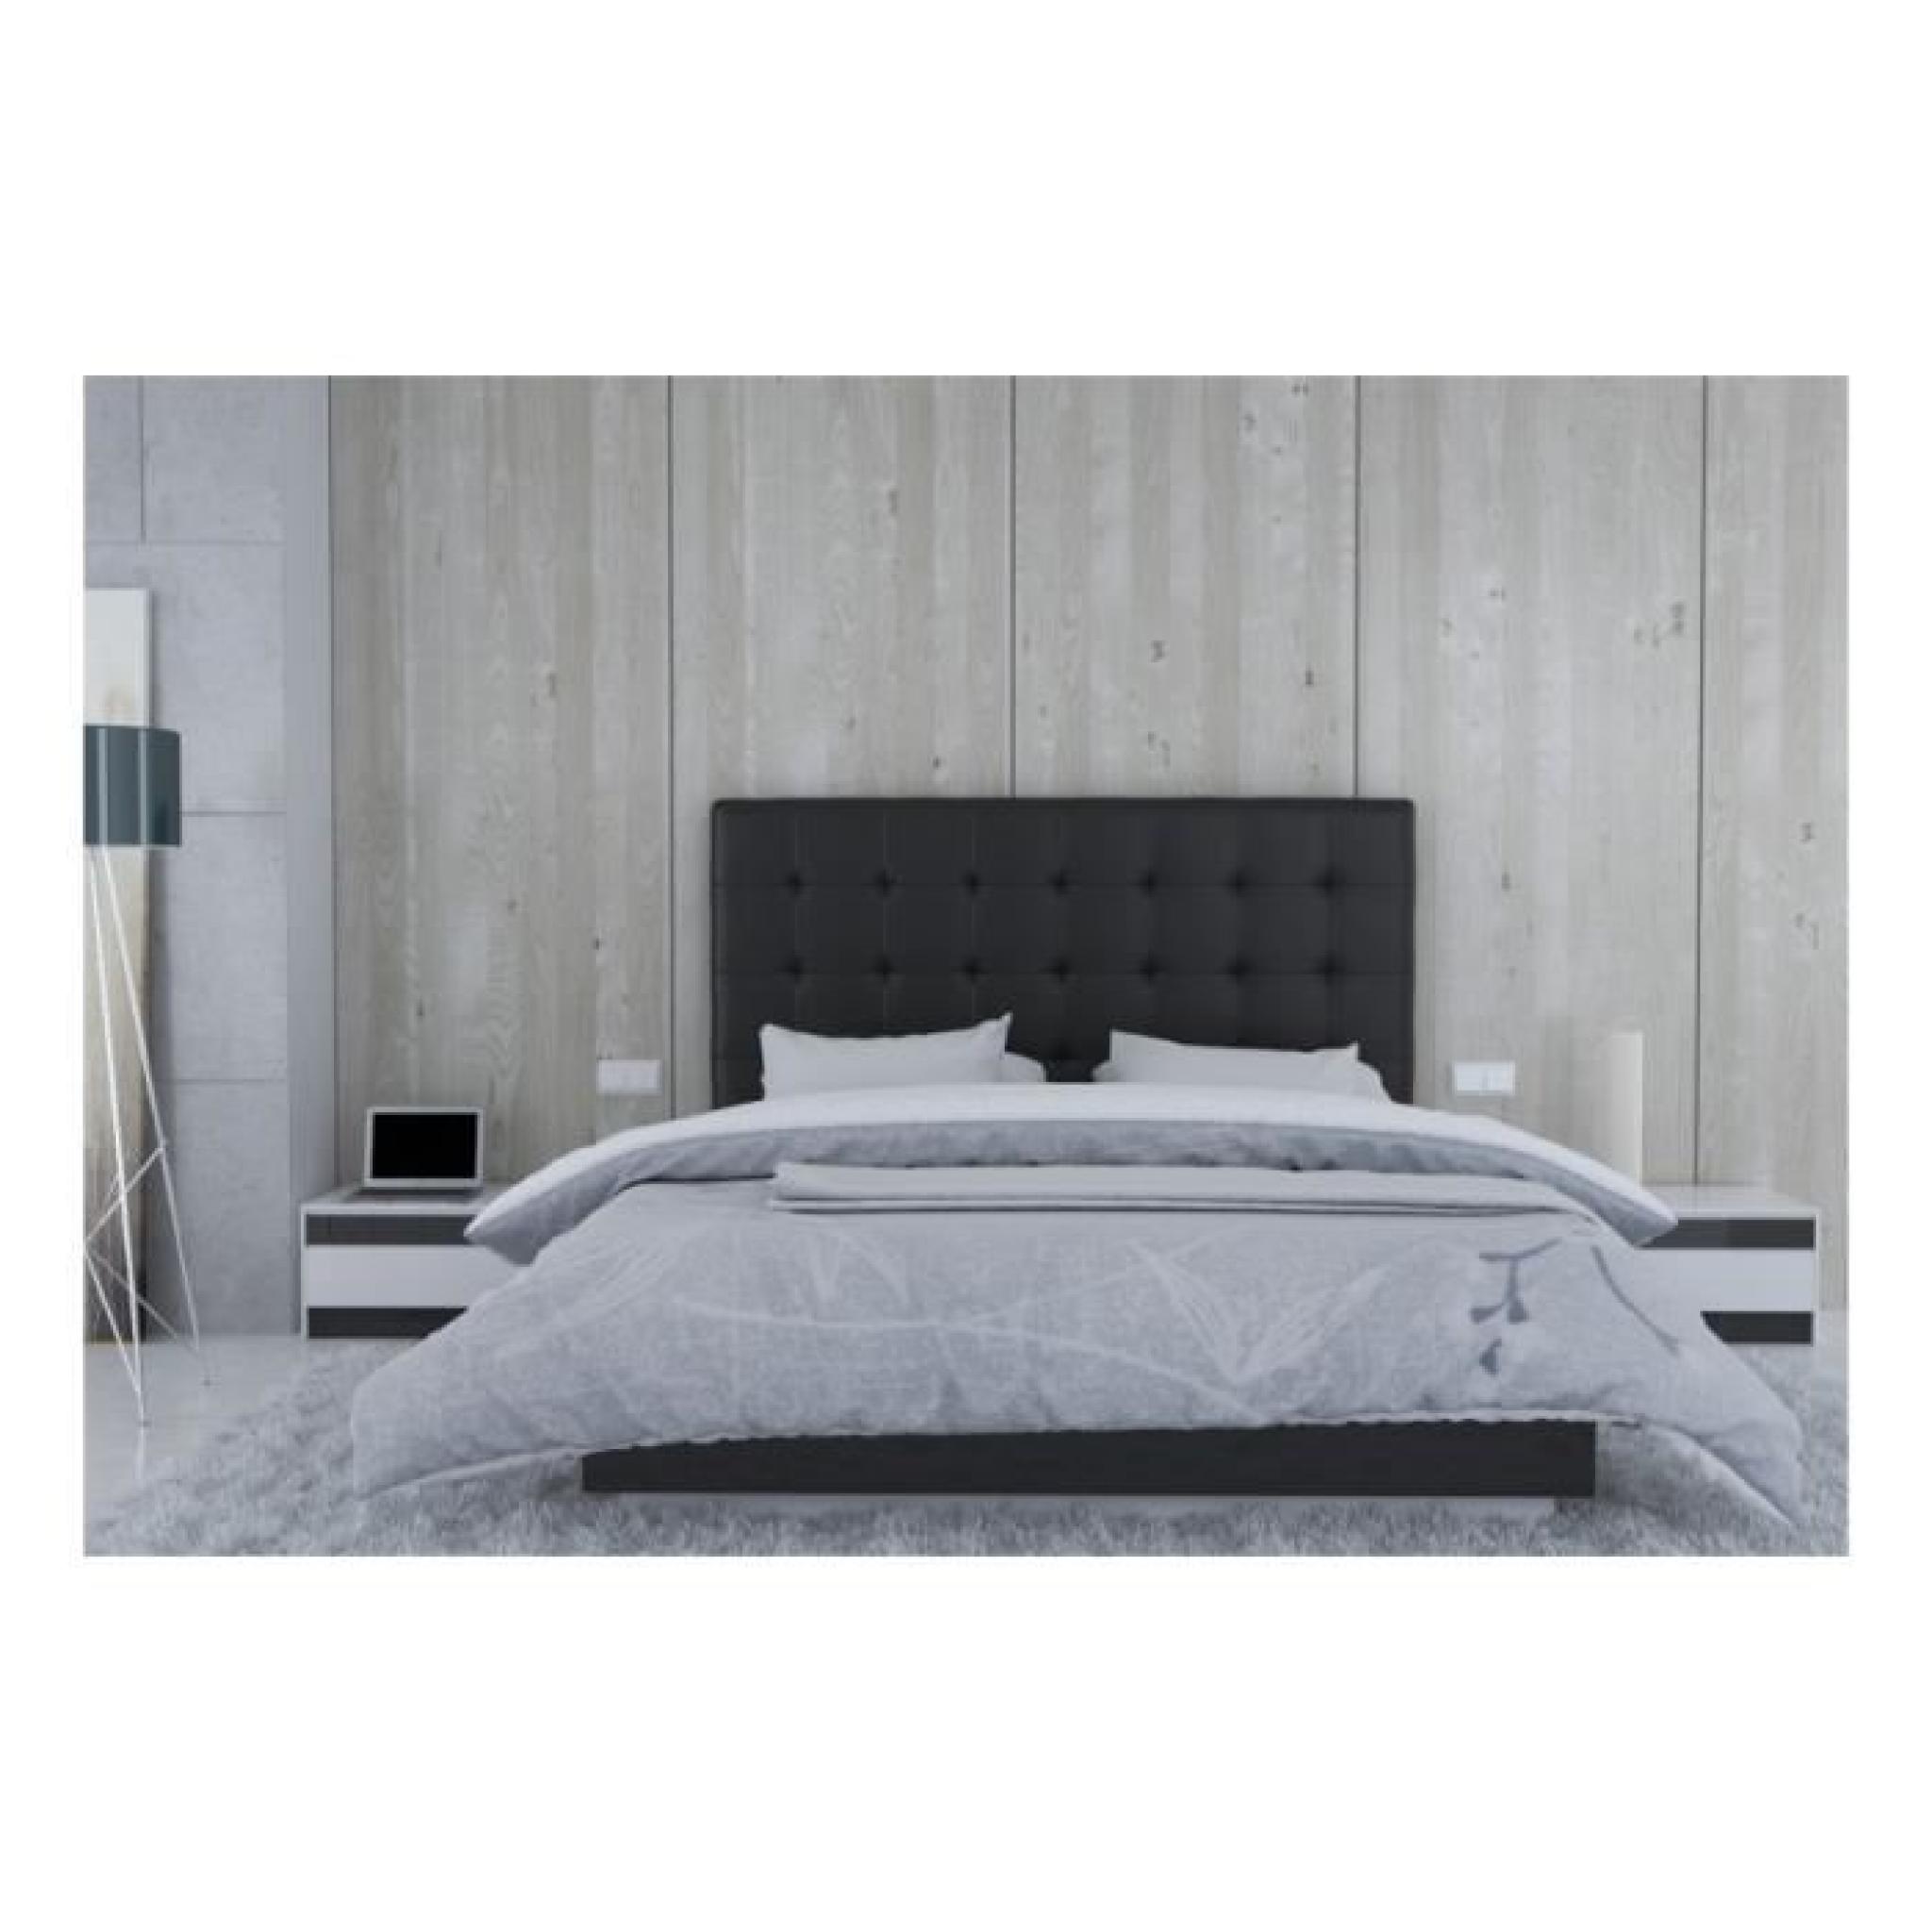 Tête de lit en PU noir - Naples Taille - 180 cm pas cher